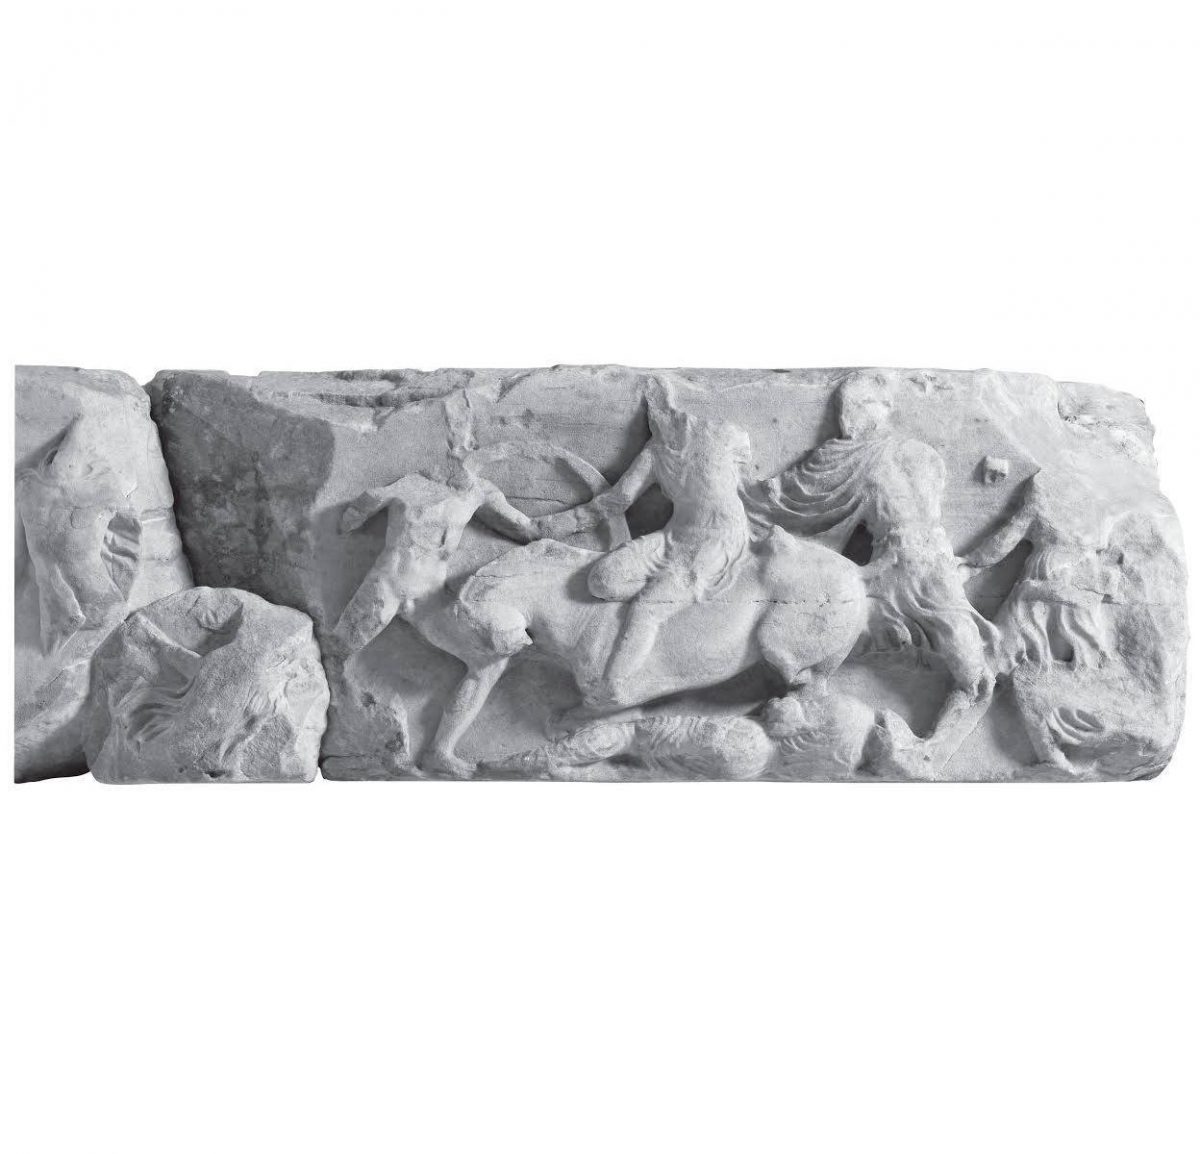 Η Μάχη του Μαραθώνα, όπως απεικονίζεται στη νότια ζωφόρο του ναού της Αθηνάς Νίκης στην Ακρόπολη της Αθήνας (Πλάκα Ε, Harrison - Μουσείο Ακρόπολης, φωτ.: Σωκράτης Μαυρομμάτης). Εξόντωση των επίλεκτων περσικών δυνάμεων/ιππικού μέσα στο Μικρό Έλος (Μπρεξίζα) του Μαραθώνα.